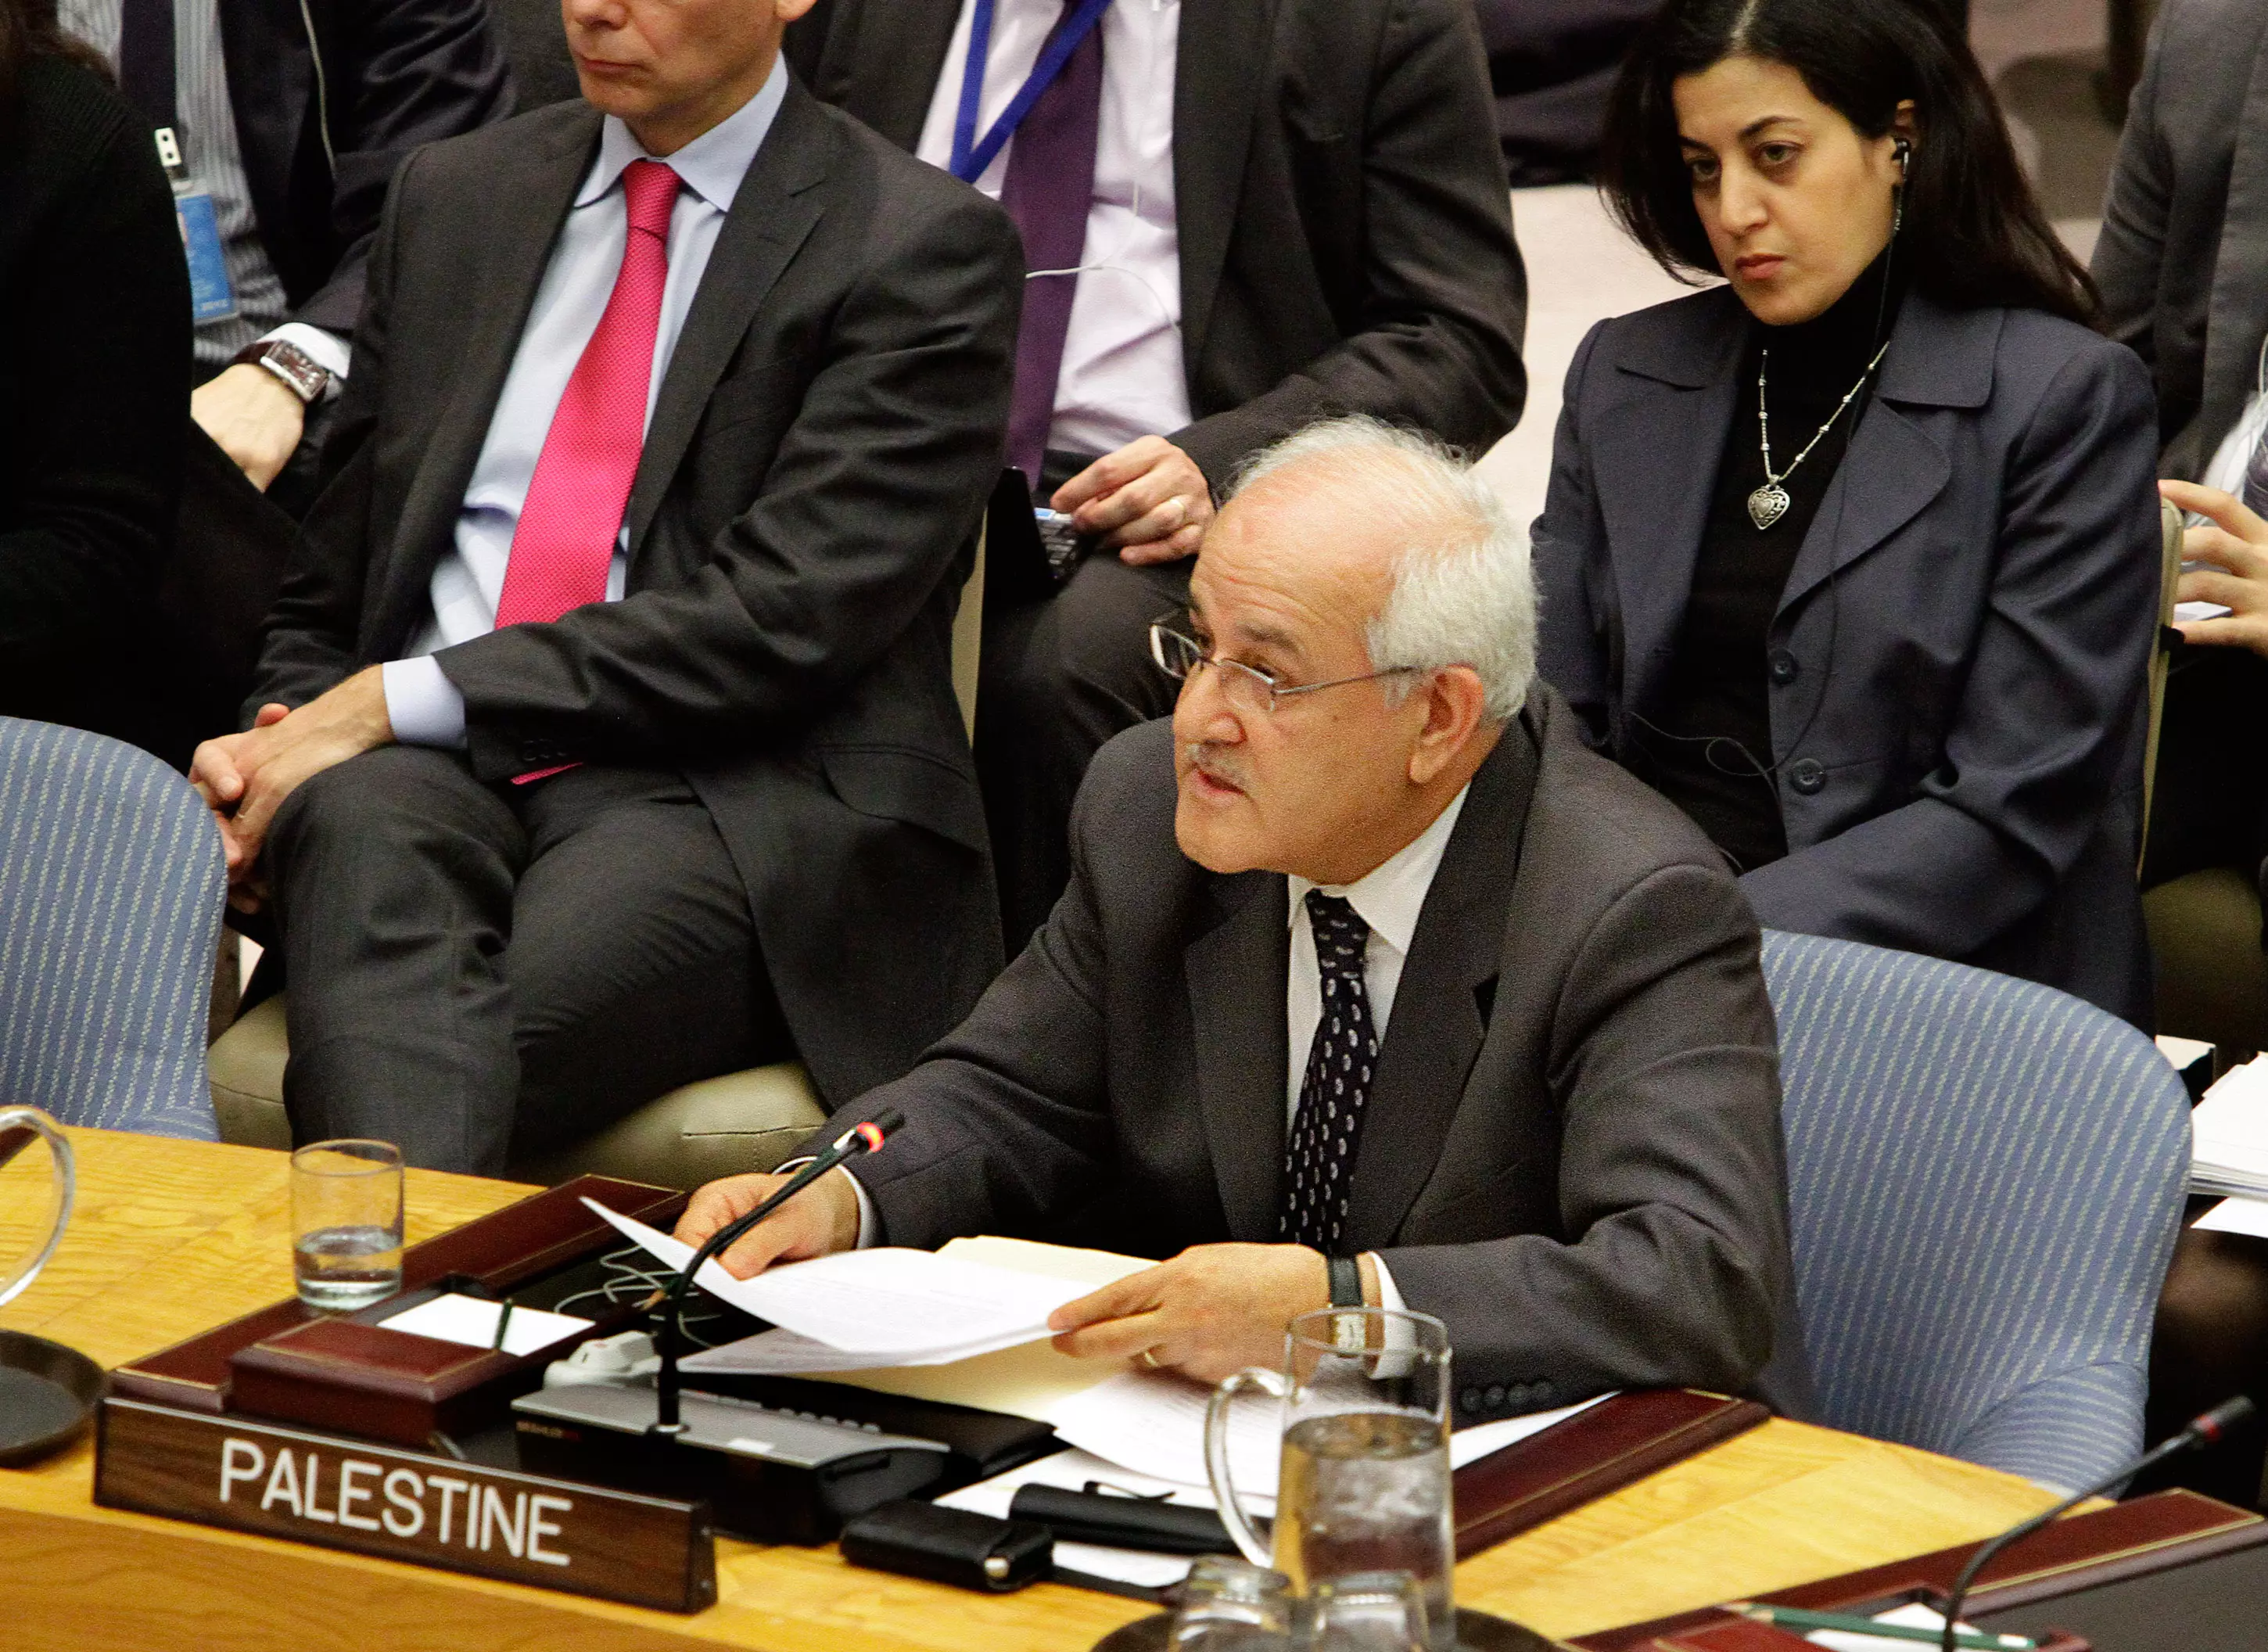 מקווה שהפלסטינים יהפכו לחברים מלאים באו"ם. השגריר הפלסטיני באו"ם